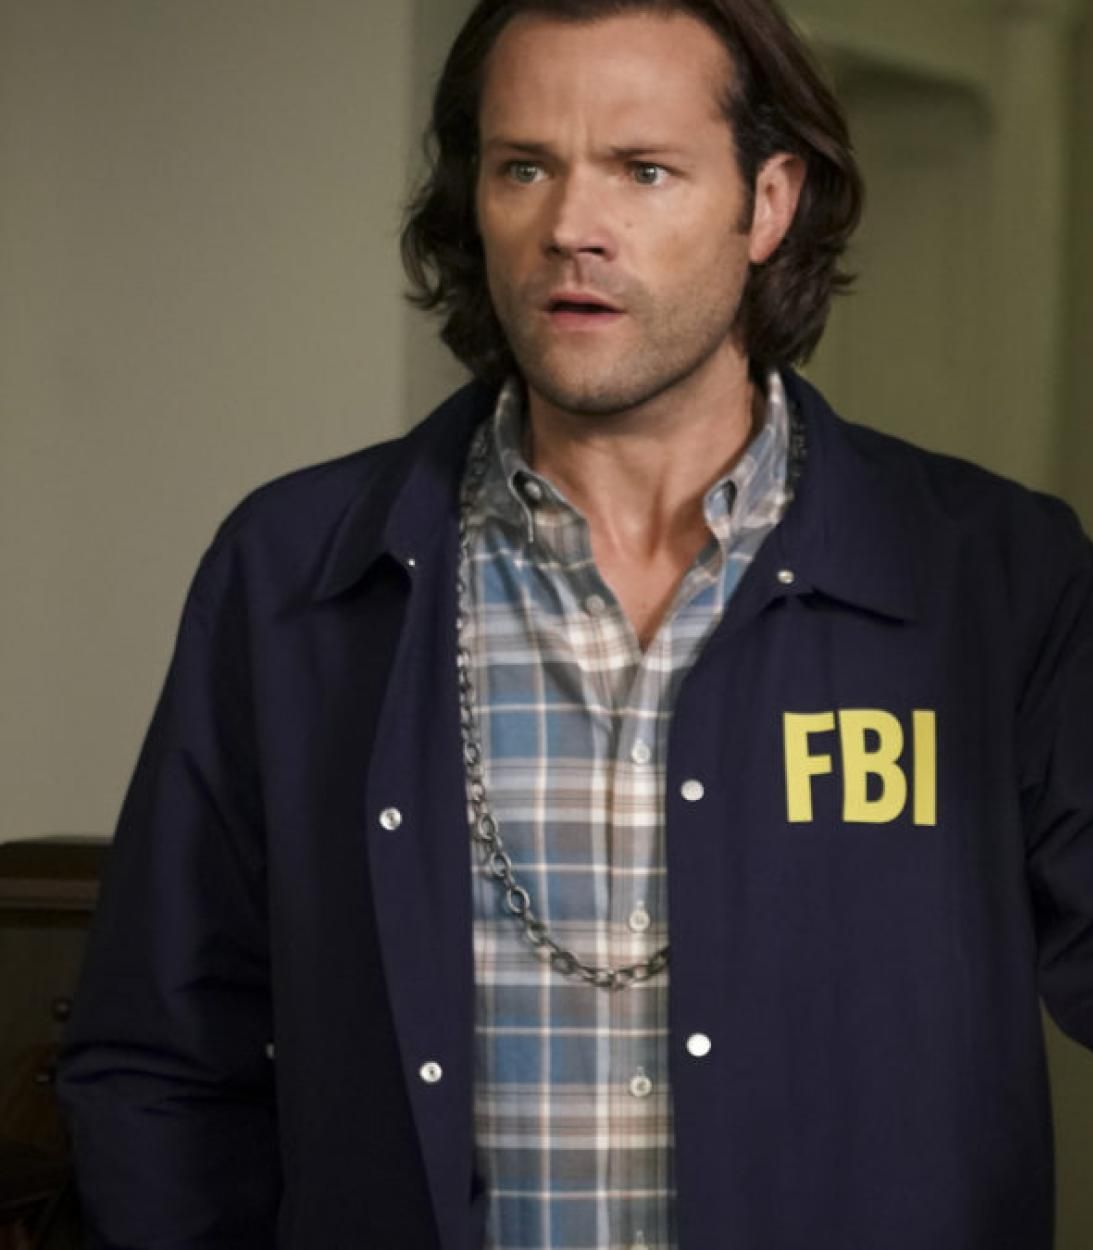 Sam and Dean in FBI costumes